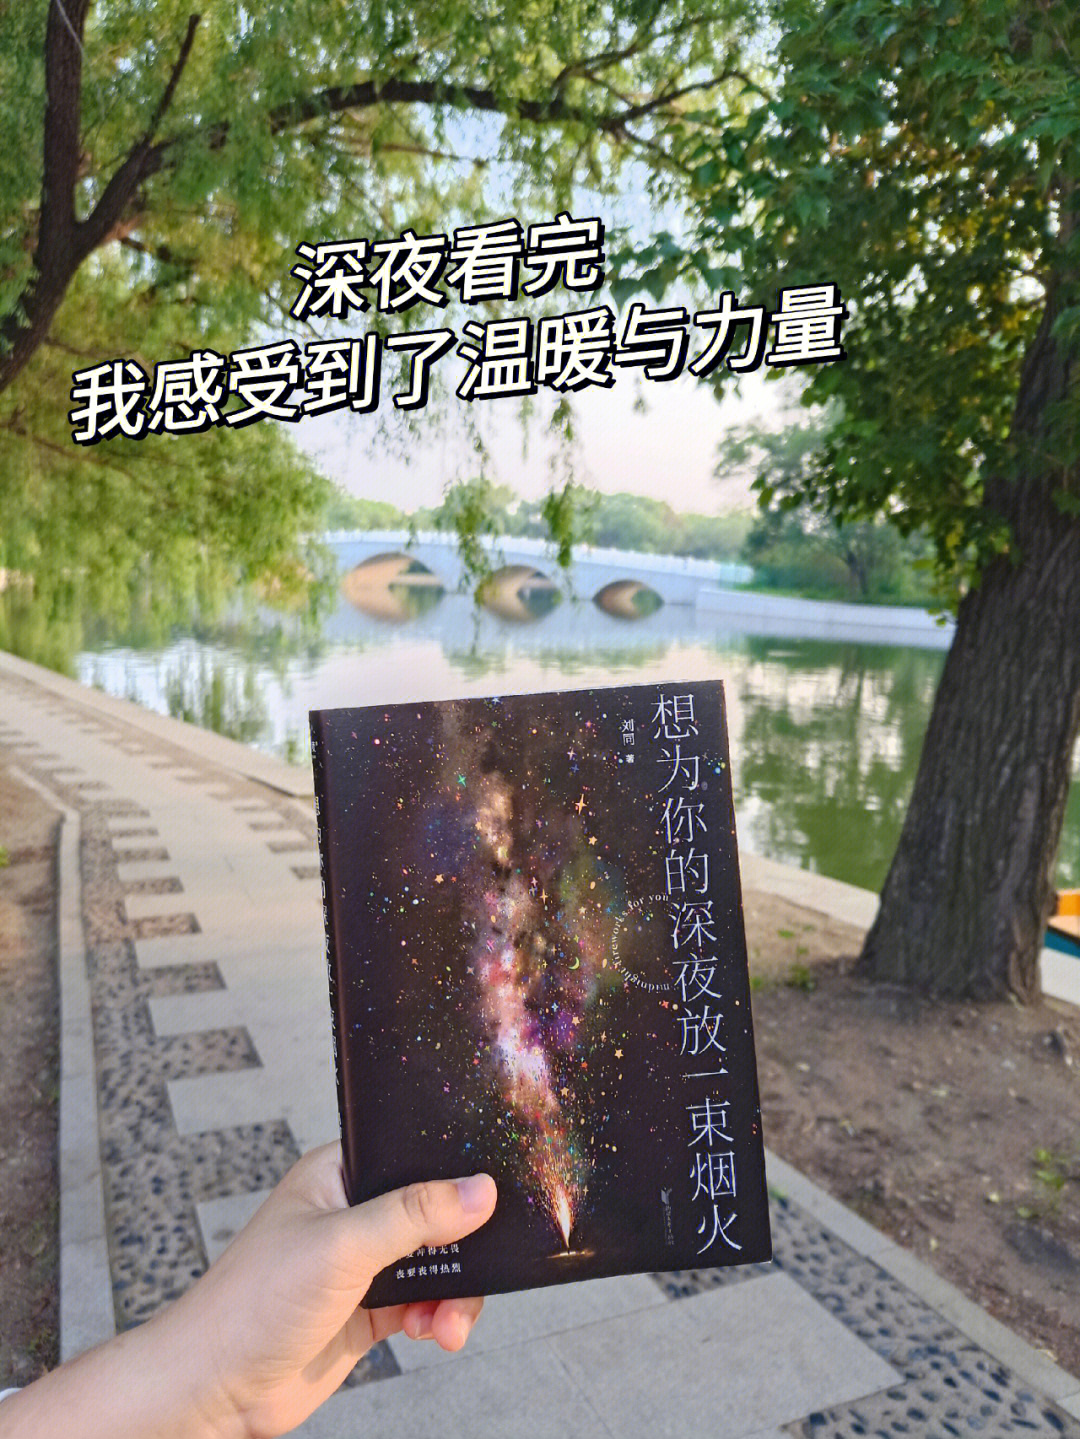 93刘同新书《想为你的深夜放一束烟火》,收到快递就迫不及待的读